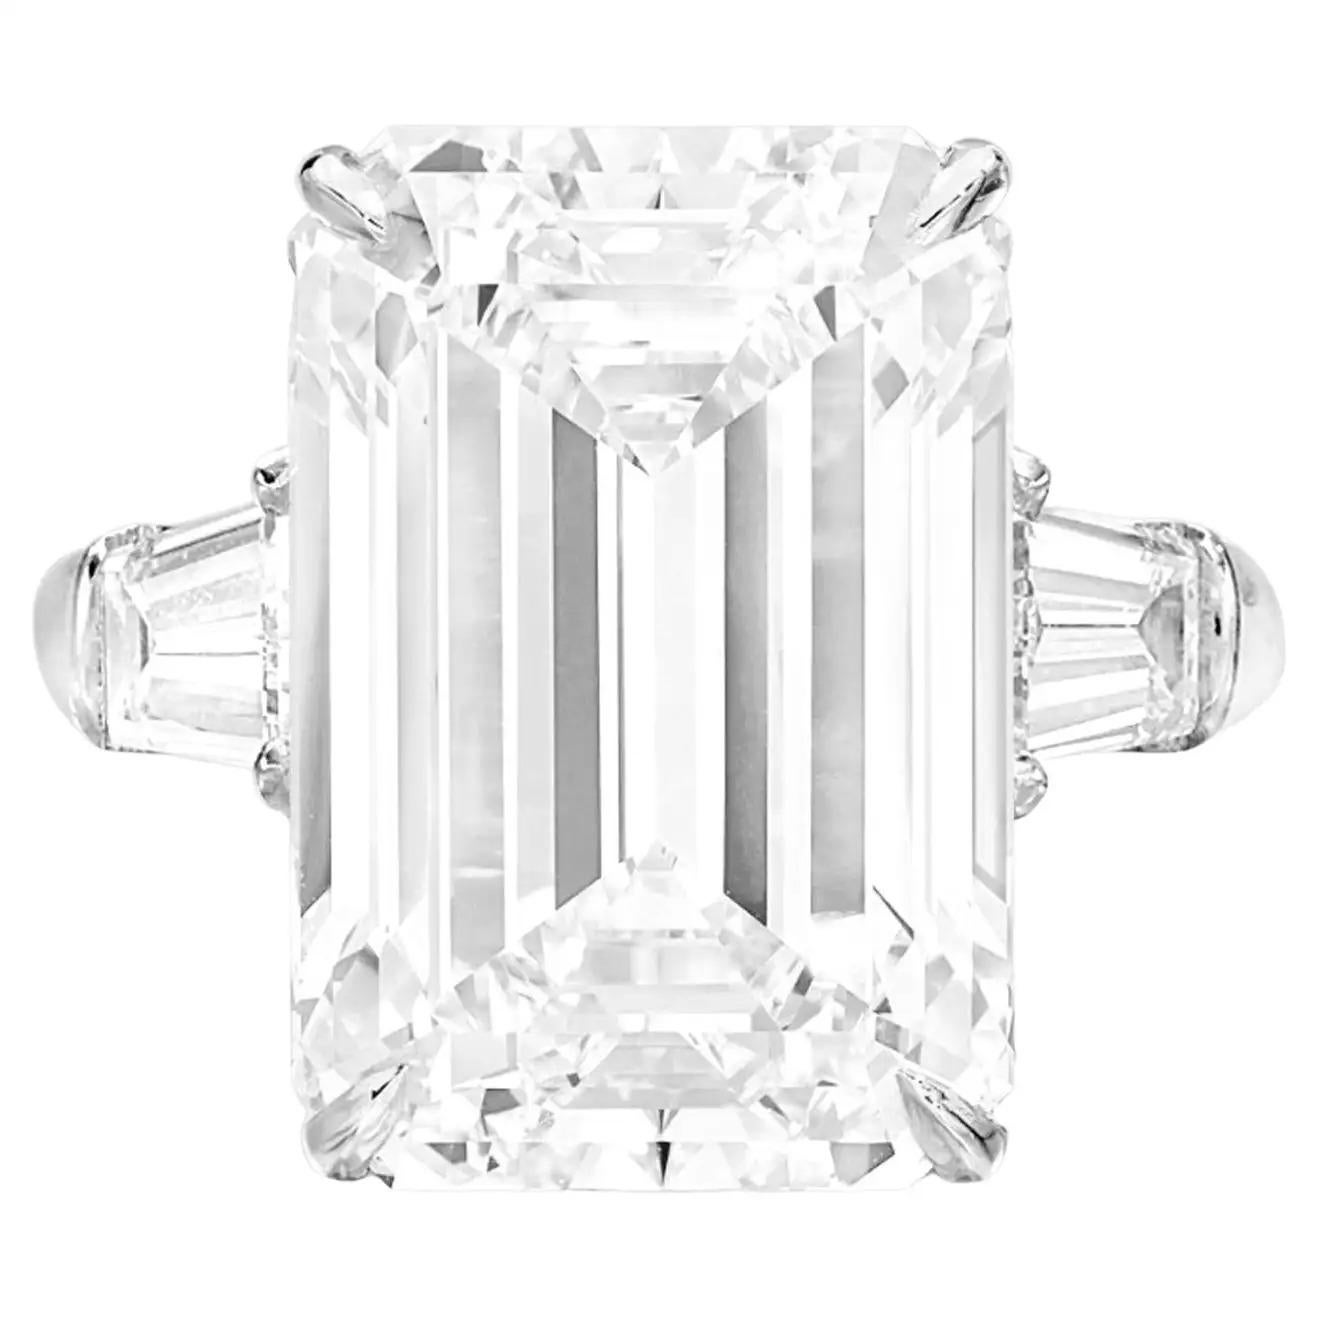 Magnifique bague en diamant de taille émeraude  Sans voix 10 Carats Emerald Cut VS1 en clarté. Certifié par la GIA

Au centre, un magnifique diamant émeraude de 10 carats certifié GIA, flanqué de deux diamants baguettes effilés et serti dans du